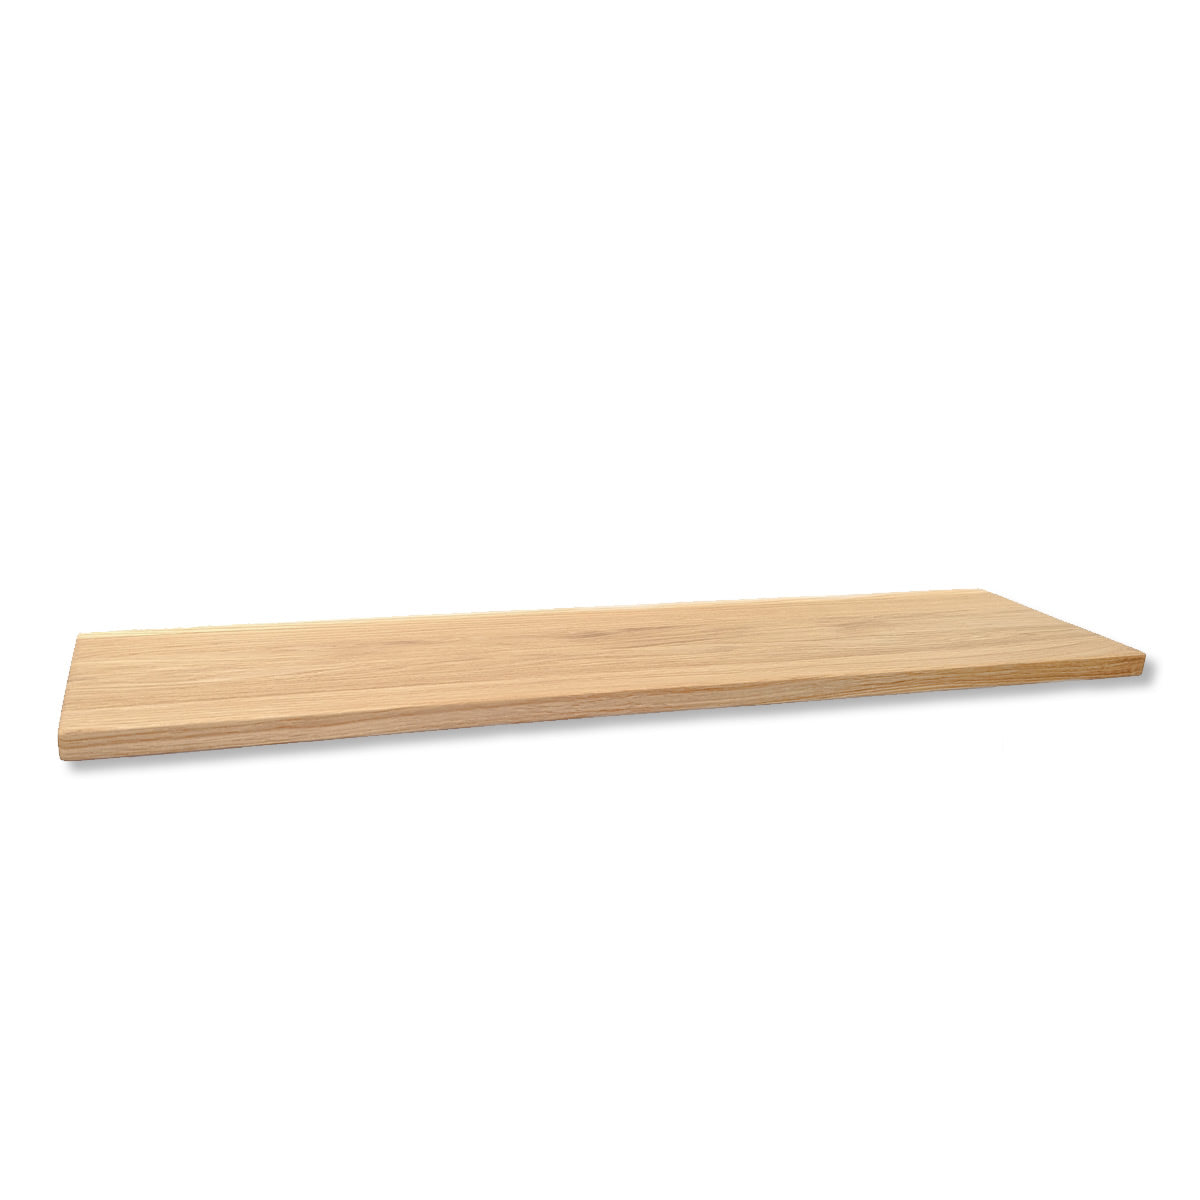 Strangways - wooden floating shelf with round edge • Light • 3 sizes